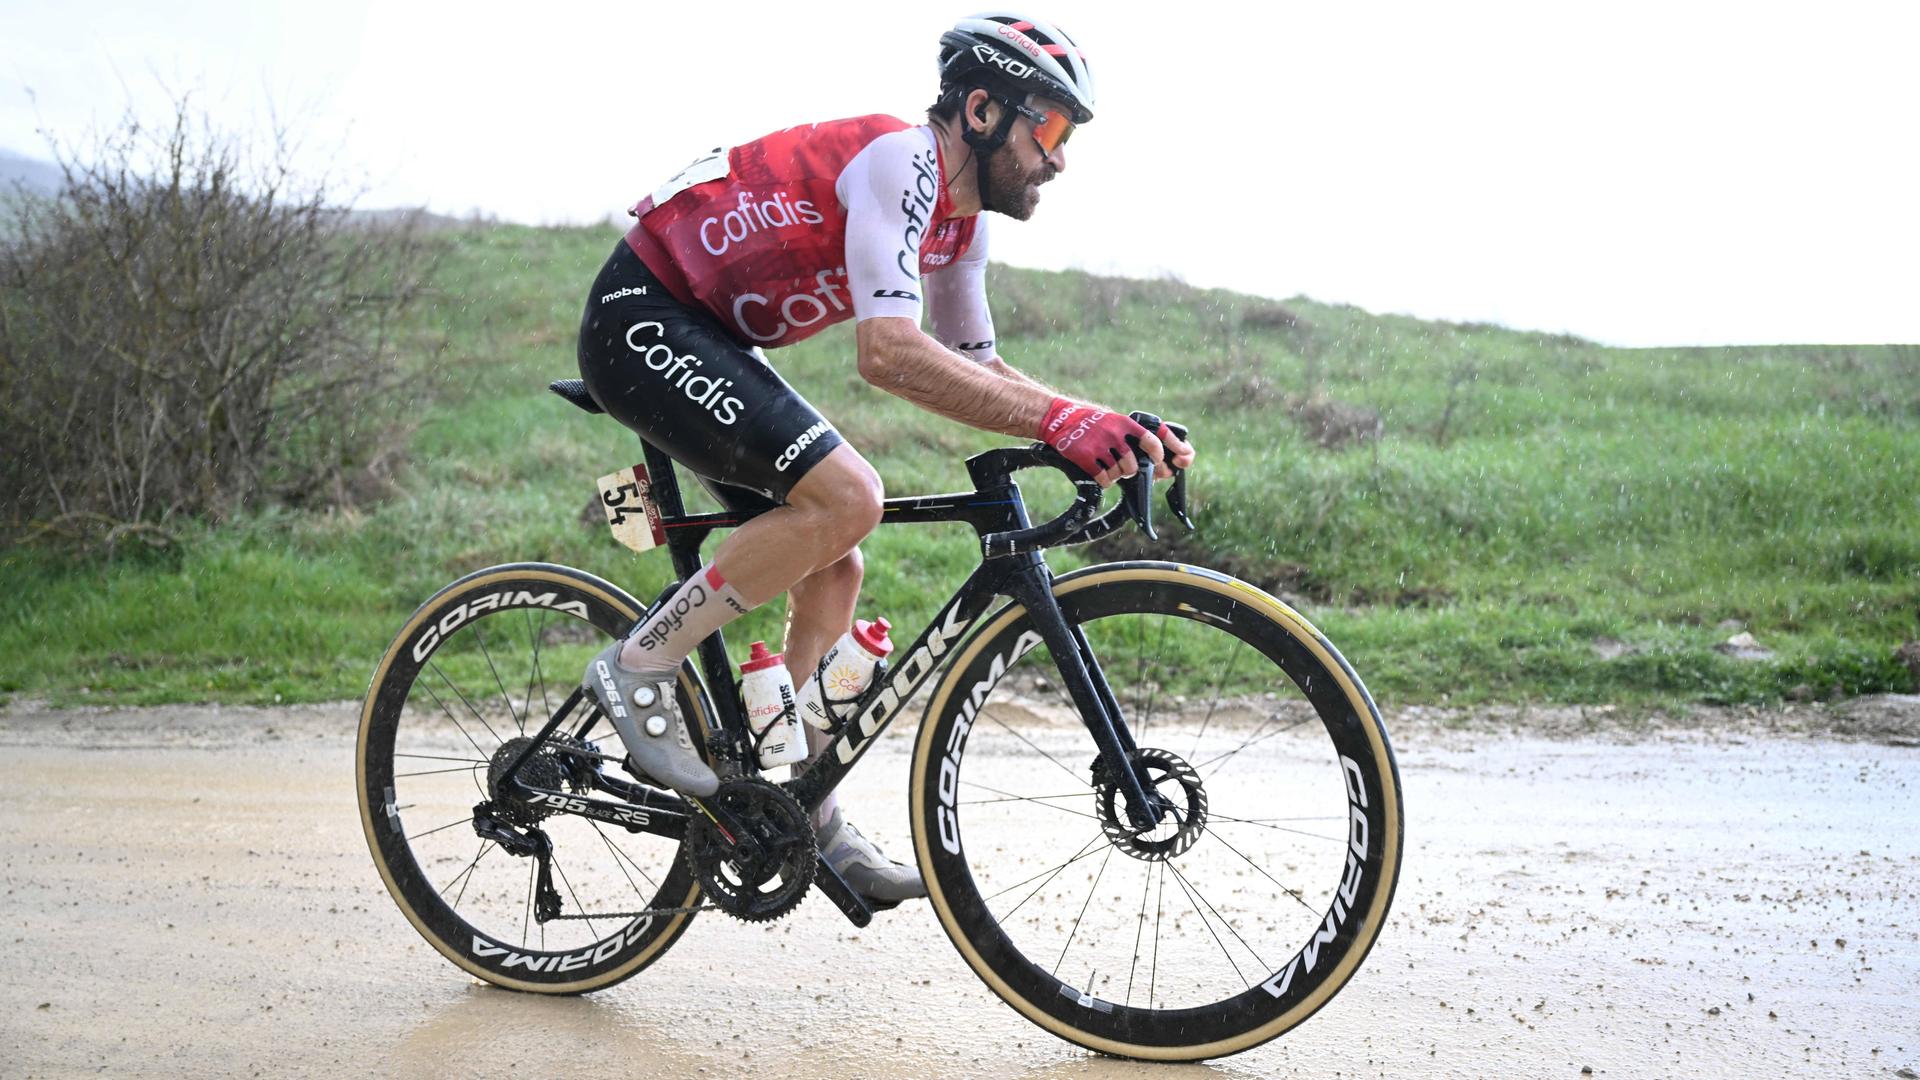 Zu sehen ist Radprofi Simon Geschke, während er auf einer nassen Straße bergan fährt.